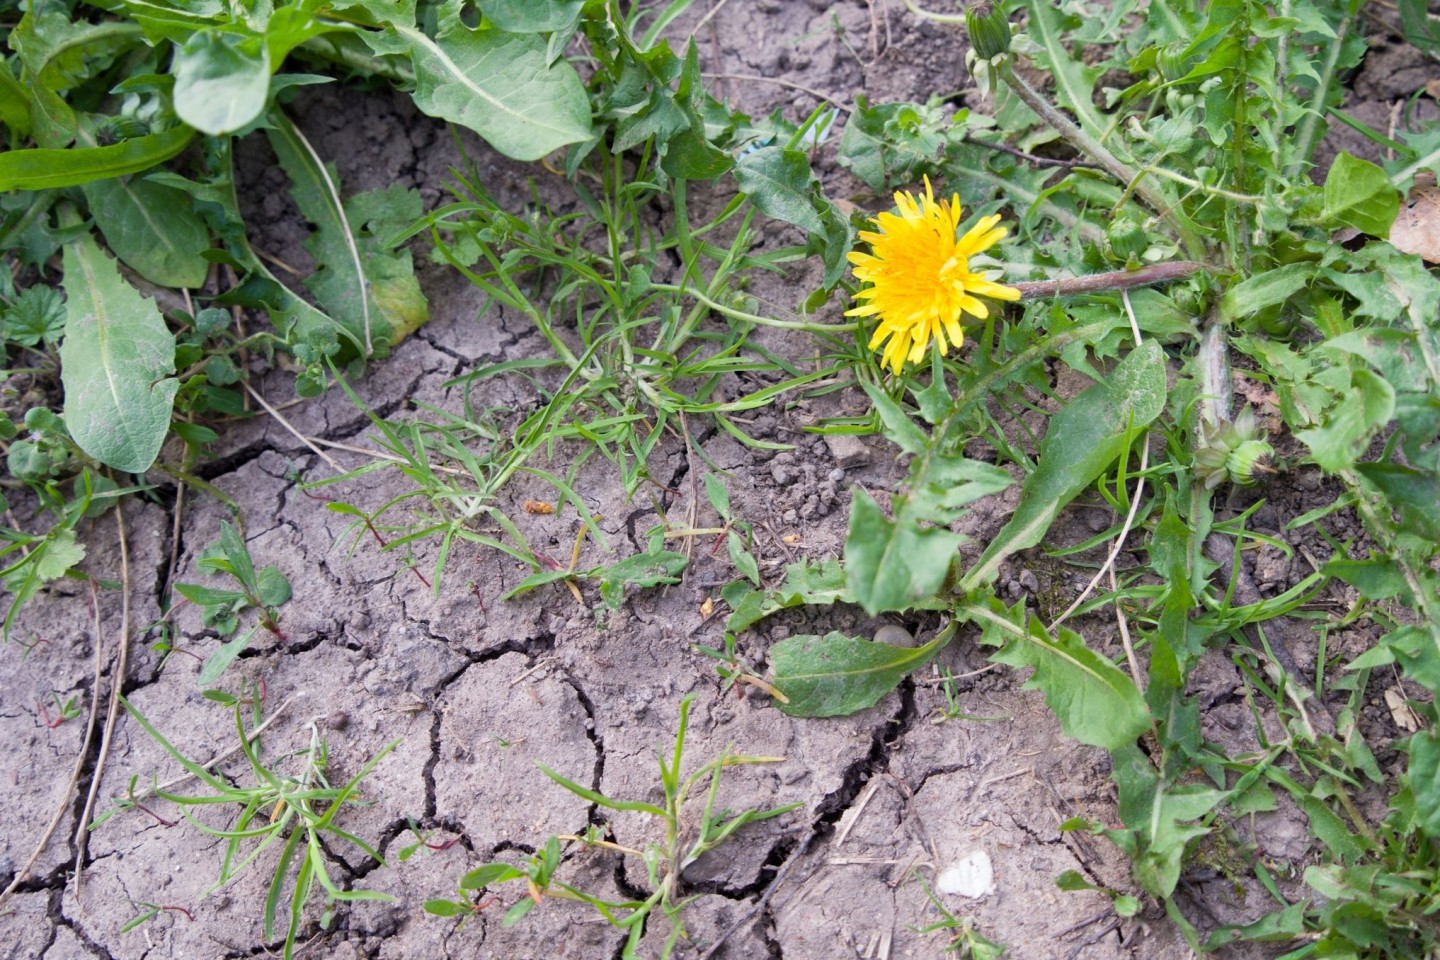 Die meisten Pflanzen kämen noch ganz gut zurecht mit der Rest-Feuchte im Boden, sagt ein Meterologe. Wenn es bis Ende Mai nicht regne, könne sich das aber ändern.